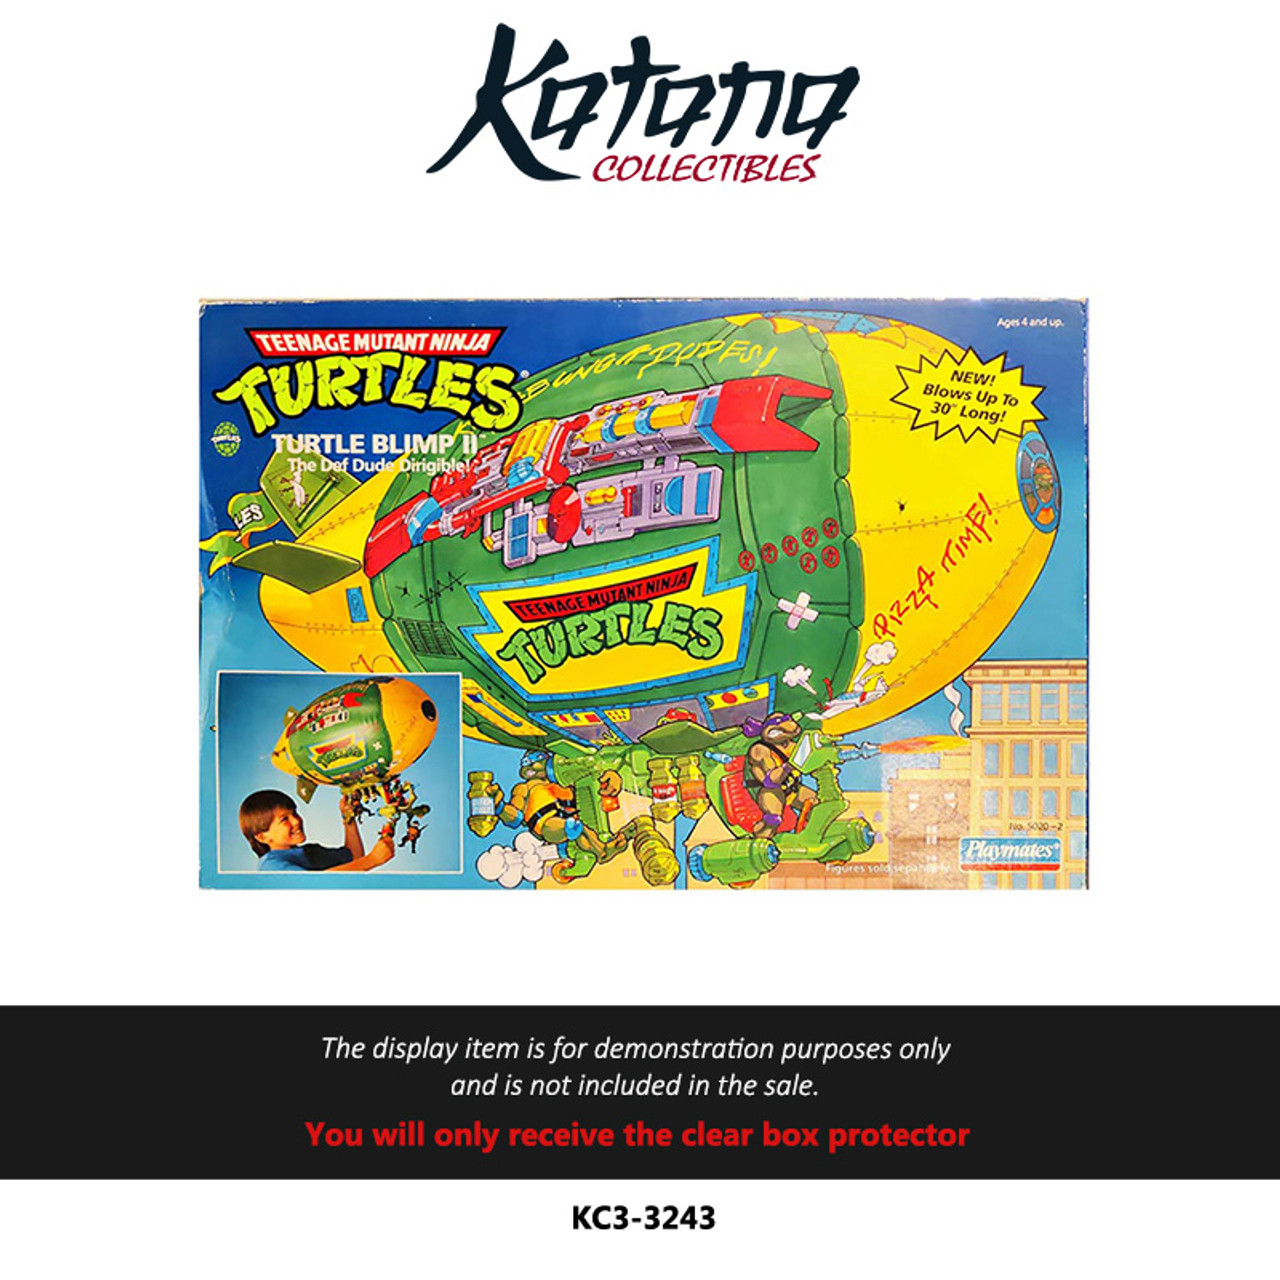 Katana Collectibles Protector For Teenage Mutant Ninja Turtles Turtle Blimp #2 Vintage Vehicle